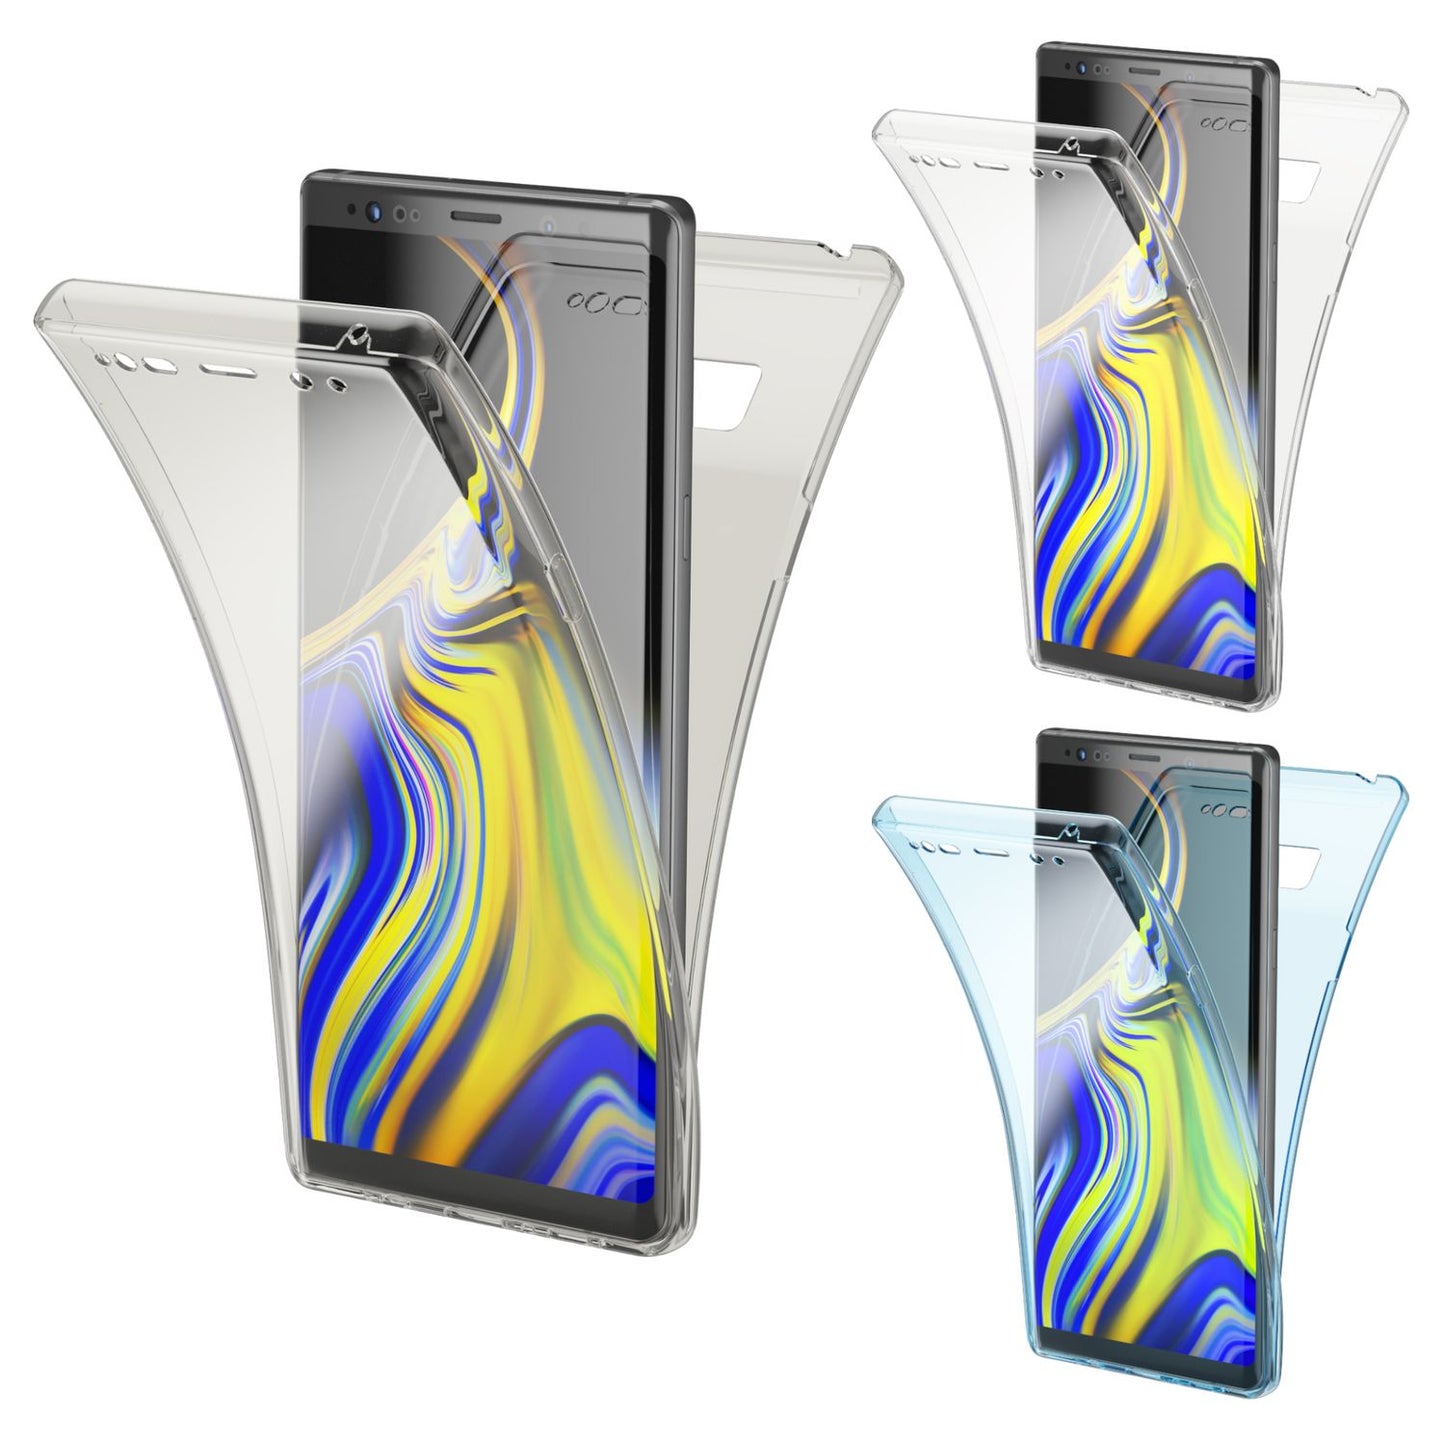 NALIA 360 Grad Handy Hülle für Samsung Galaxy Note 9, Rundum Cover Case Schutz